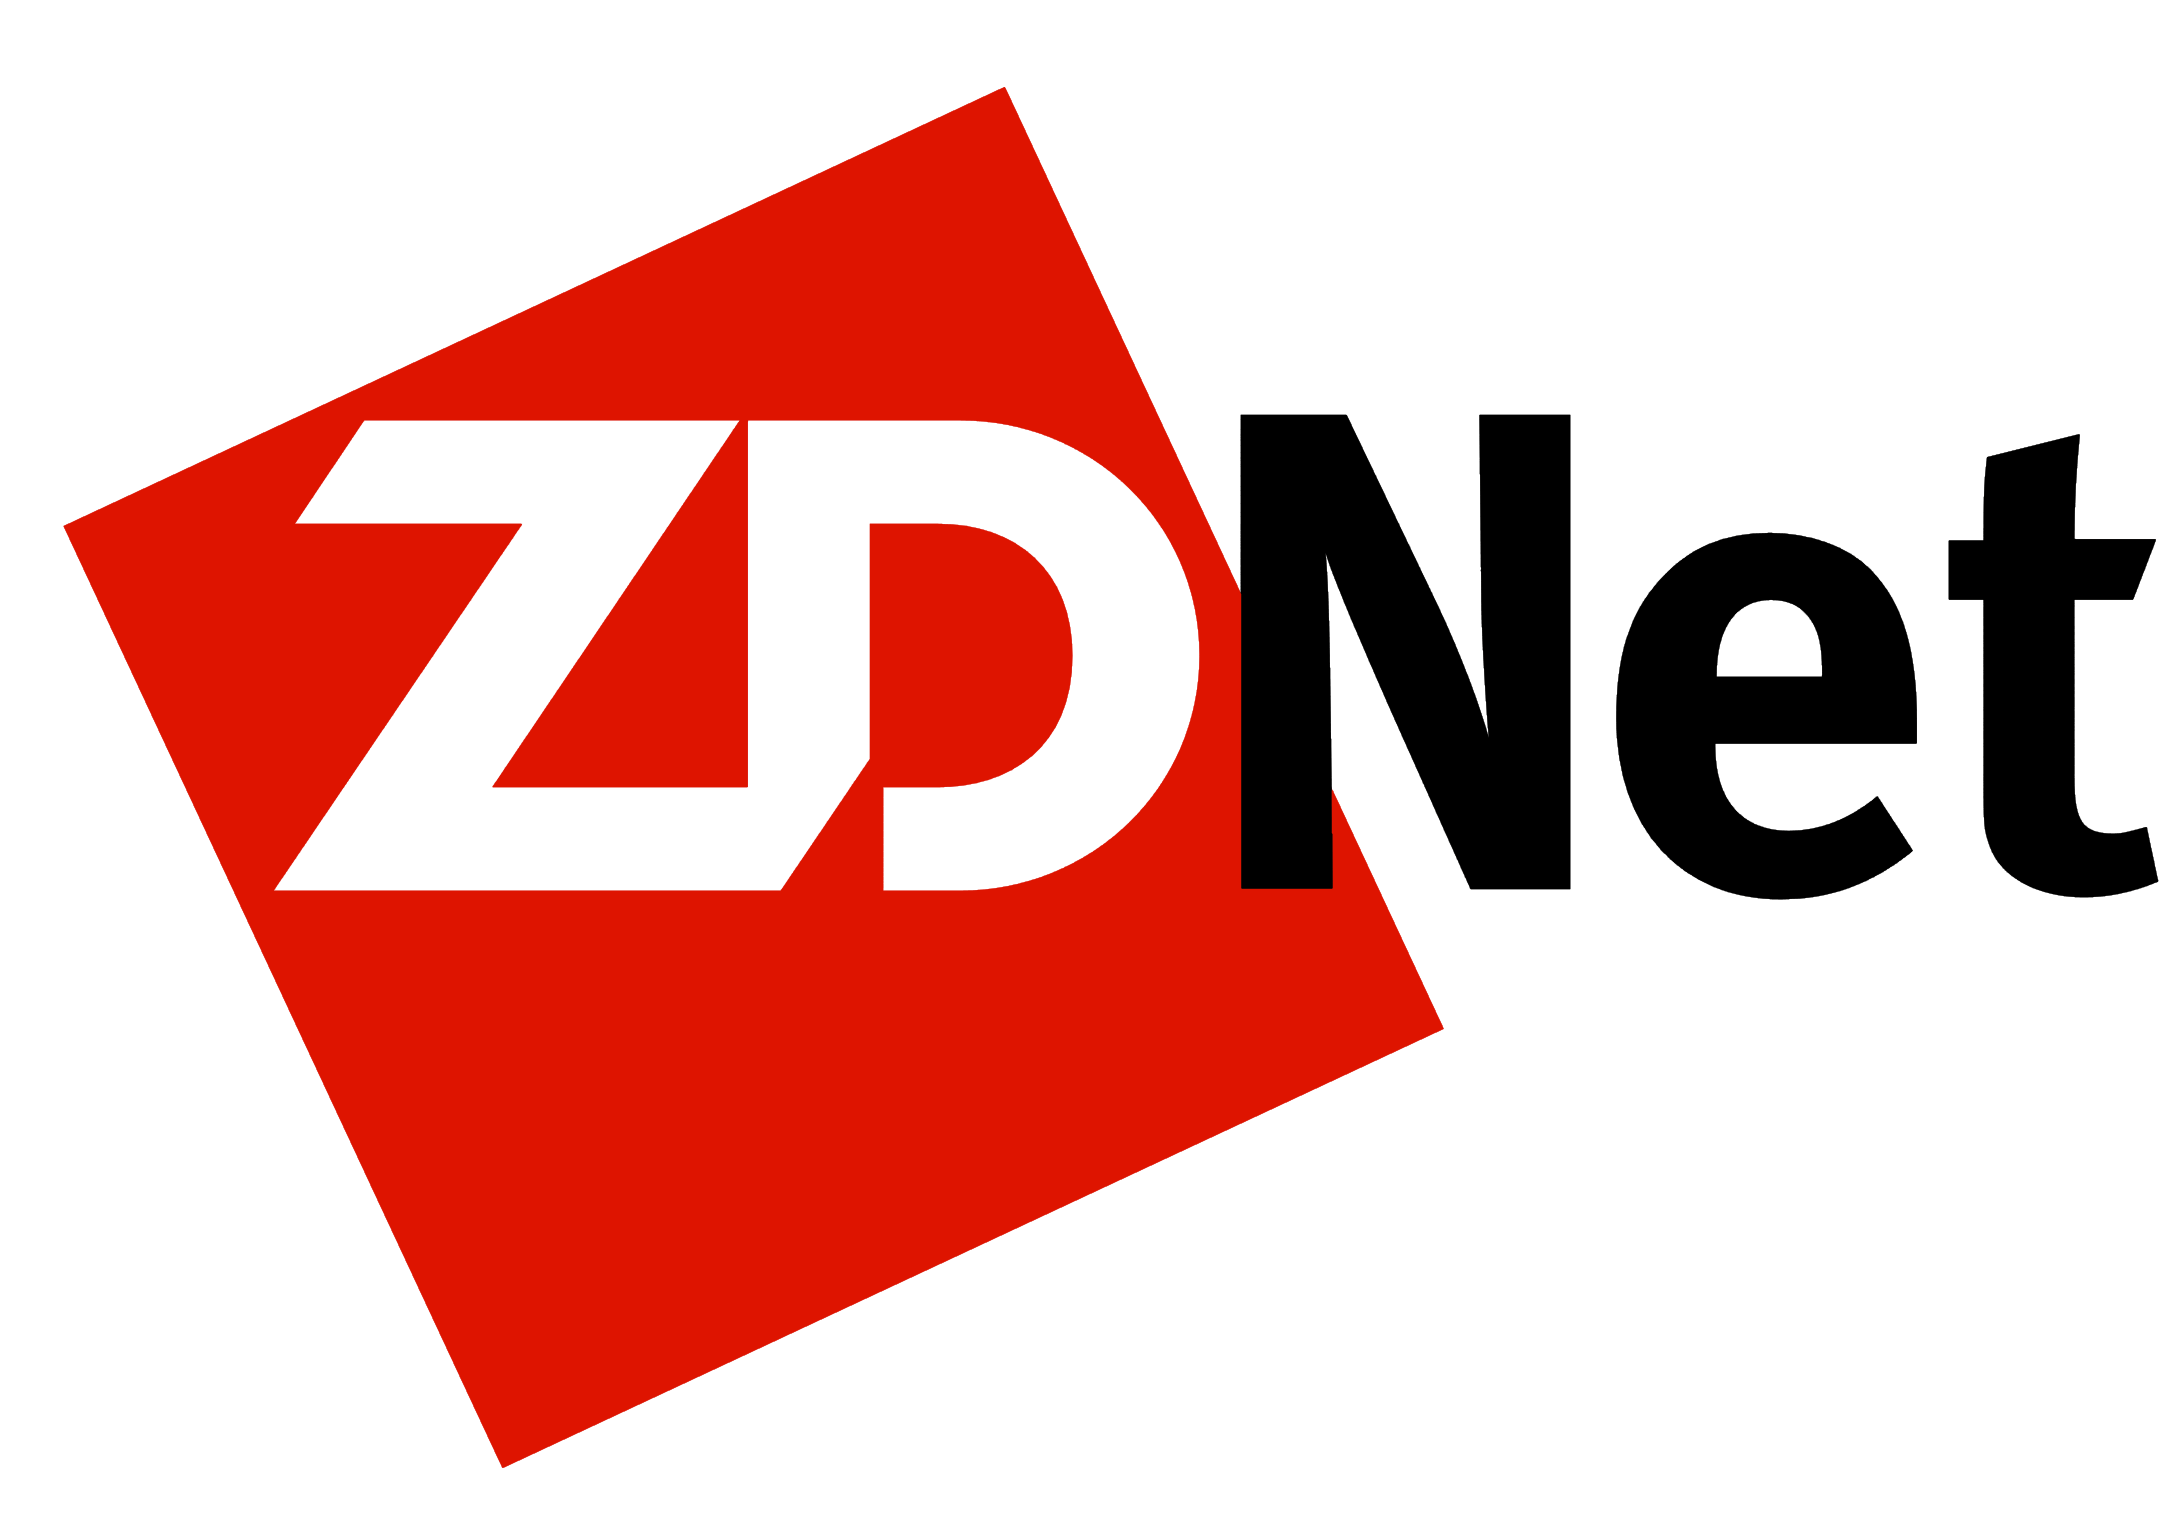 ZDNet logo, logotype